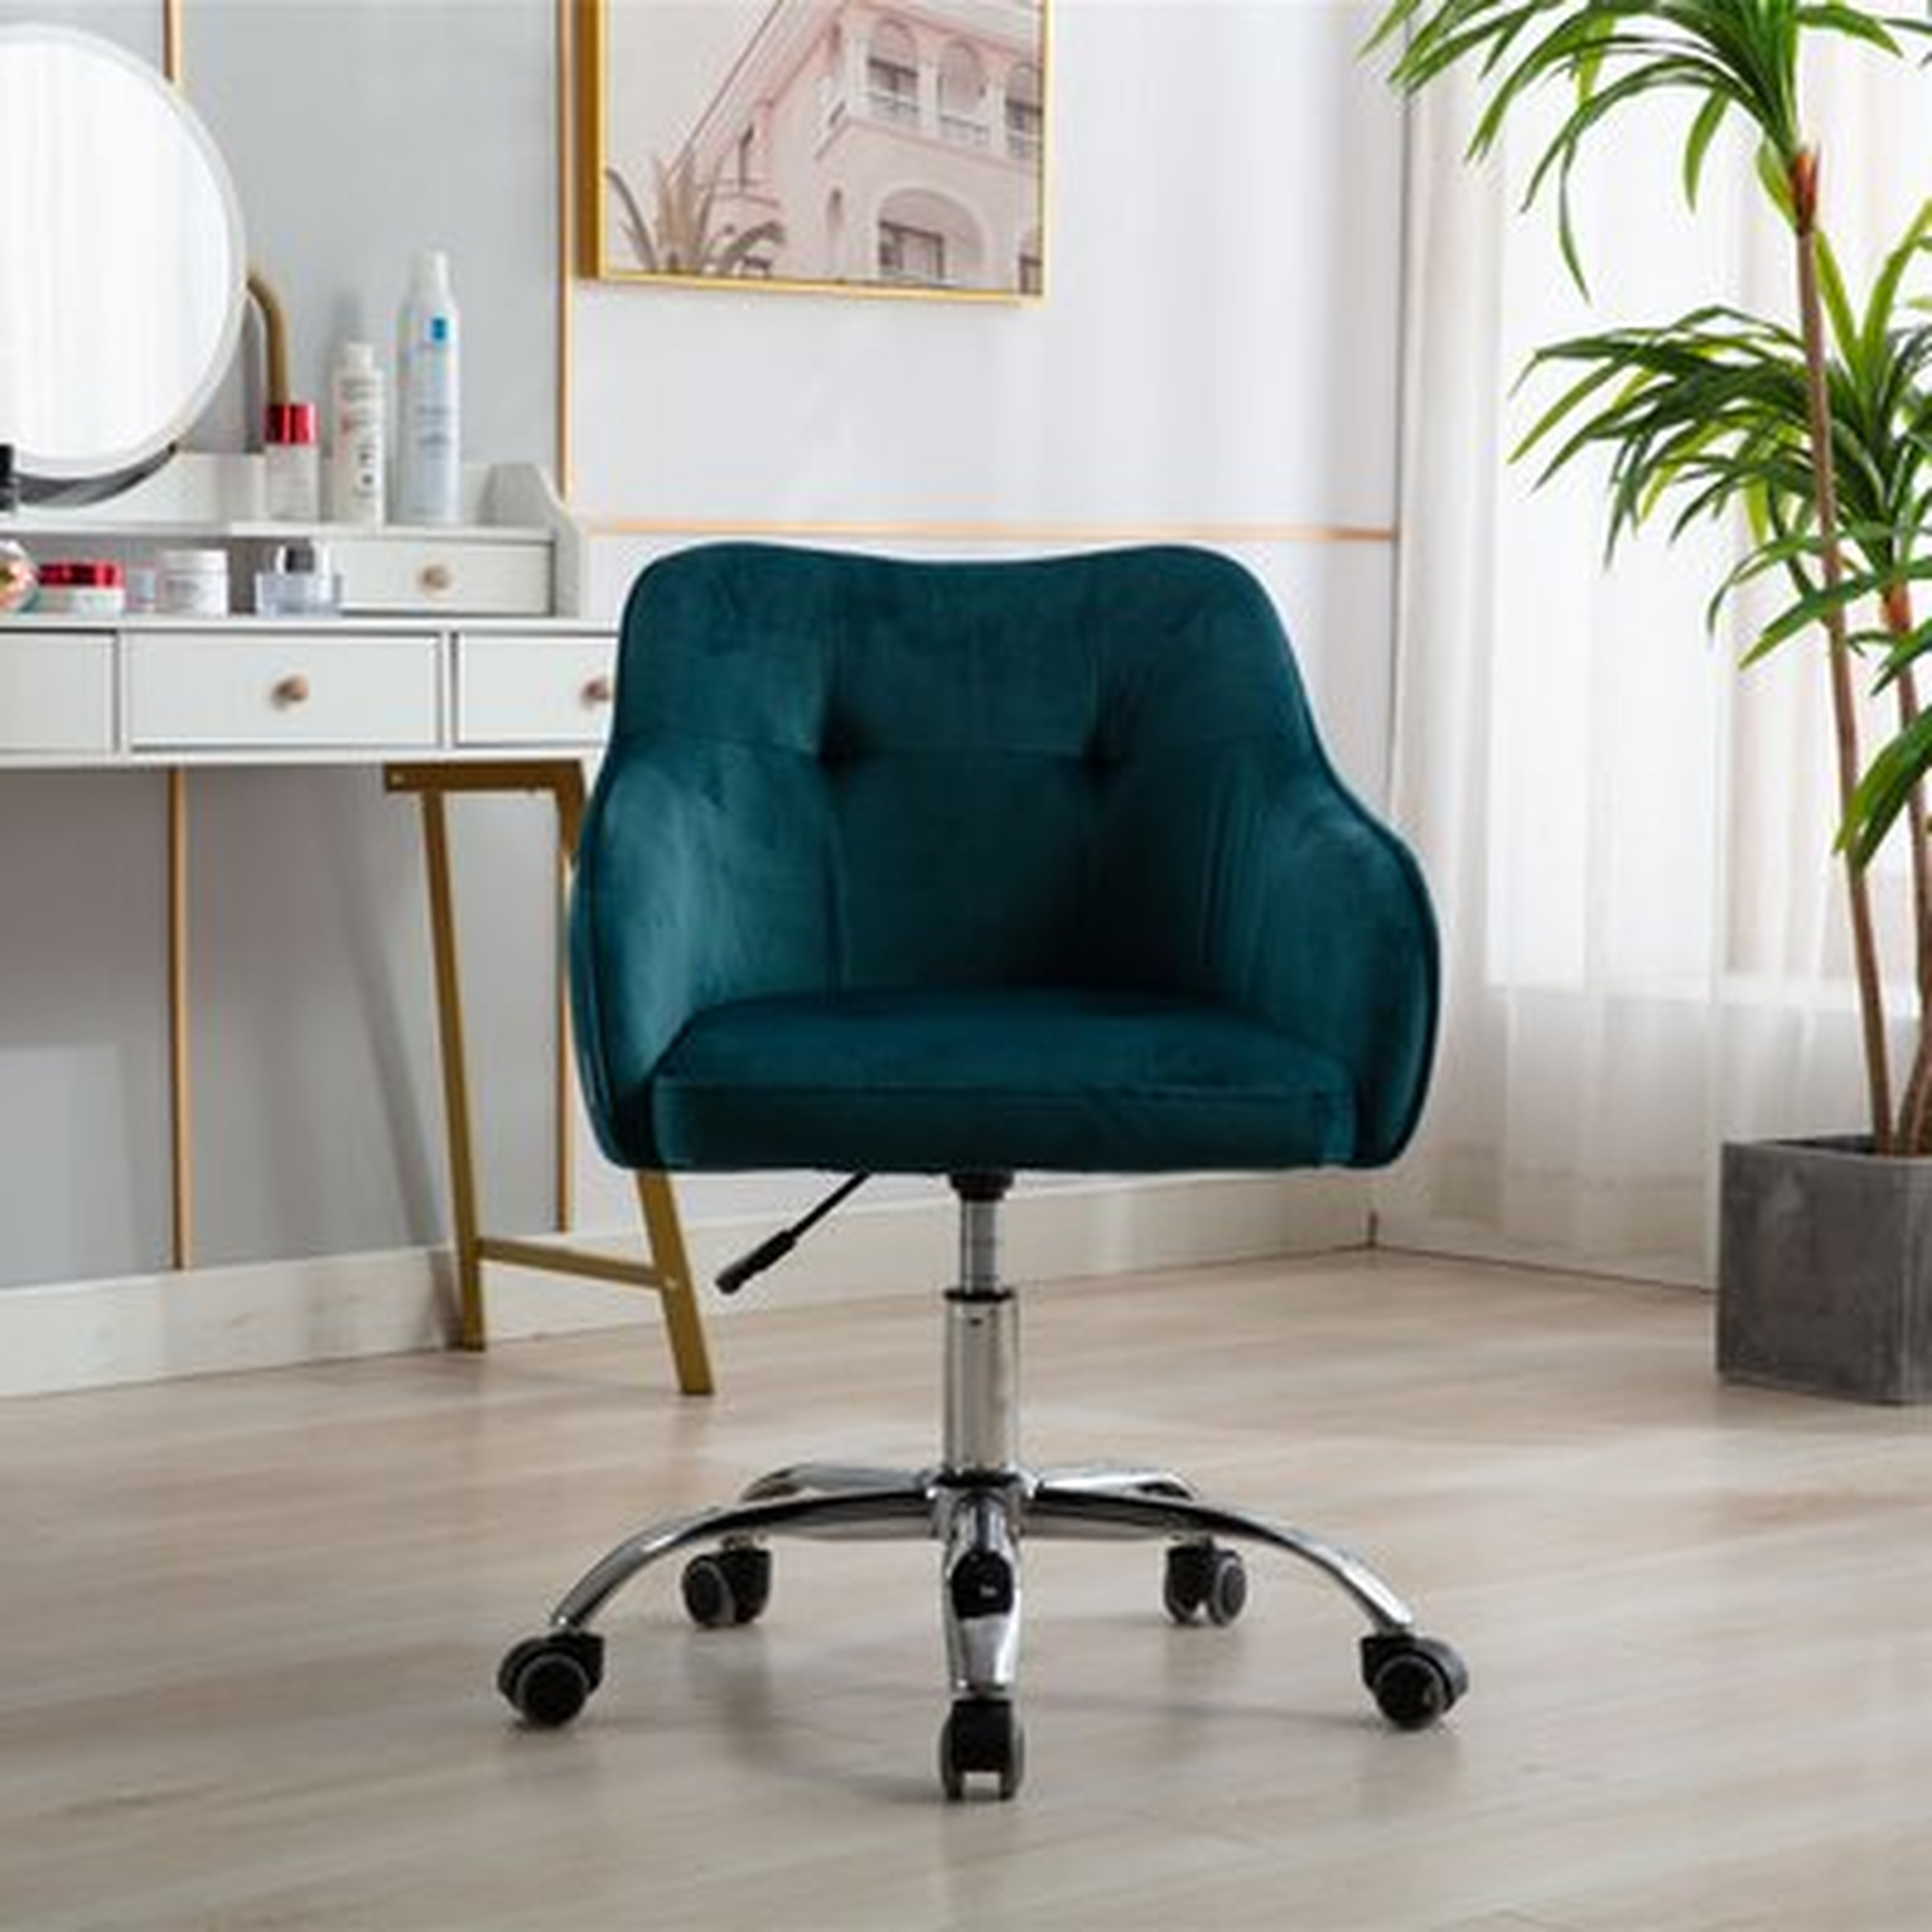 Sarratt Home Office Task Chair - Wayfair